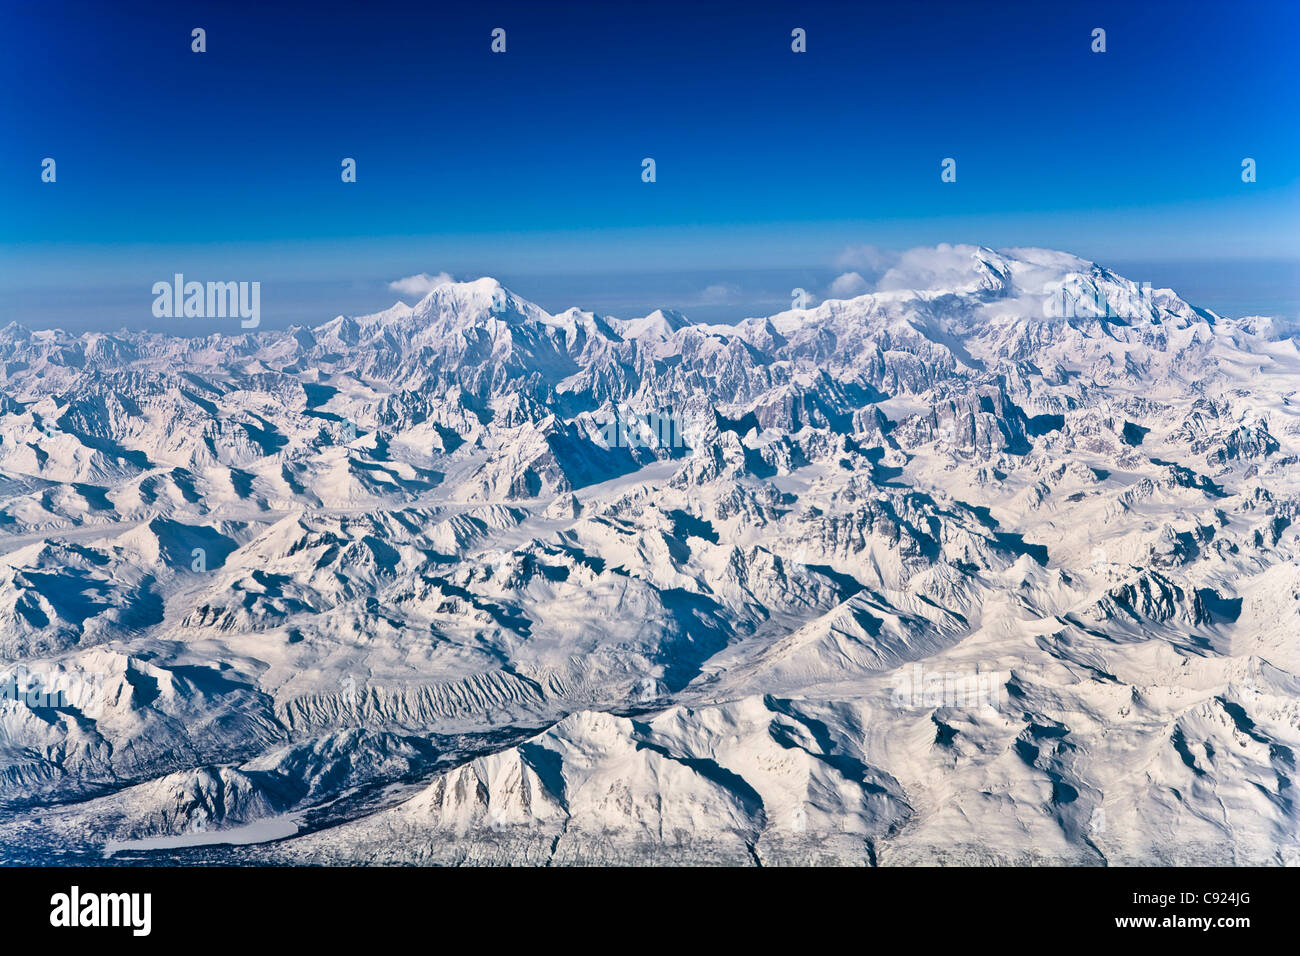 Luftaufnahme des Denali und die umliegenden Berge im Winter. Yunan, Alaska. Stockfoto